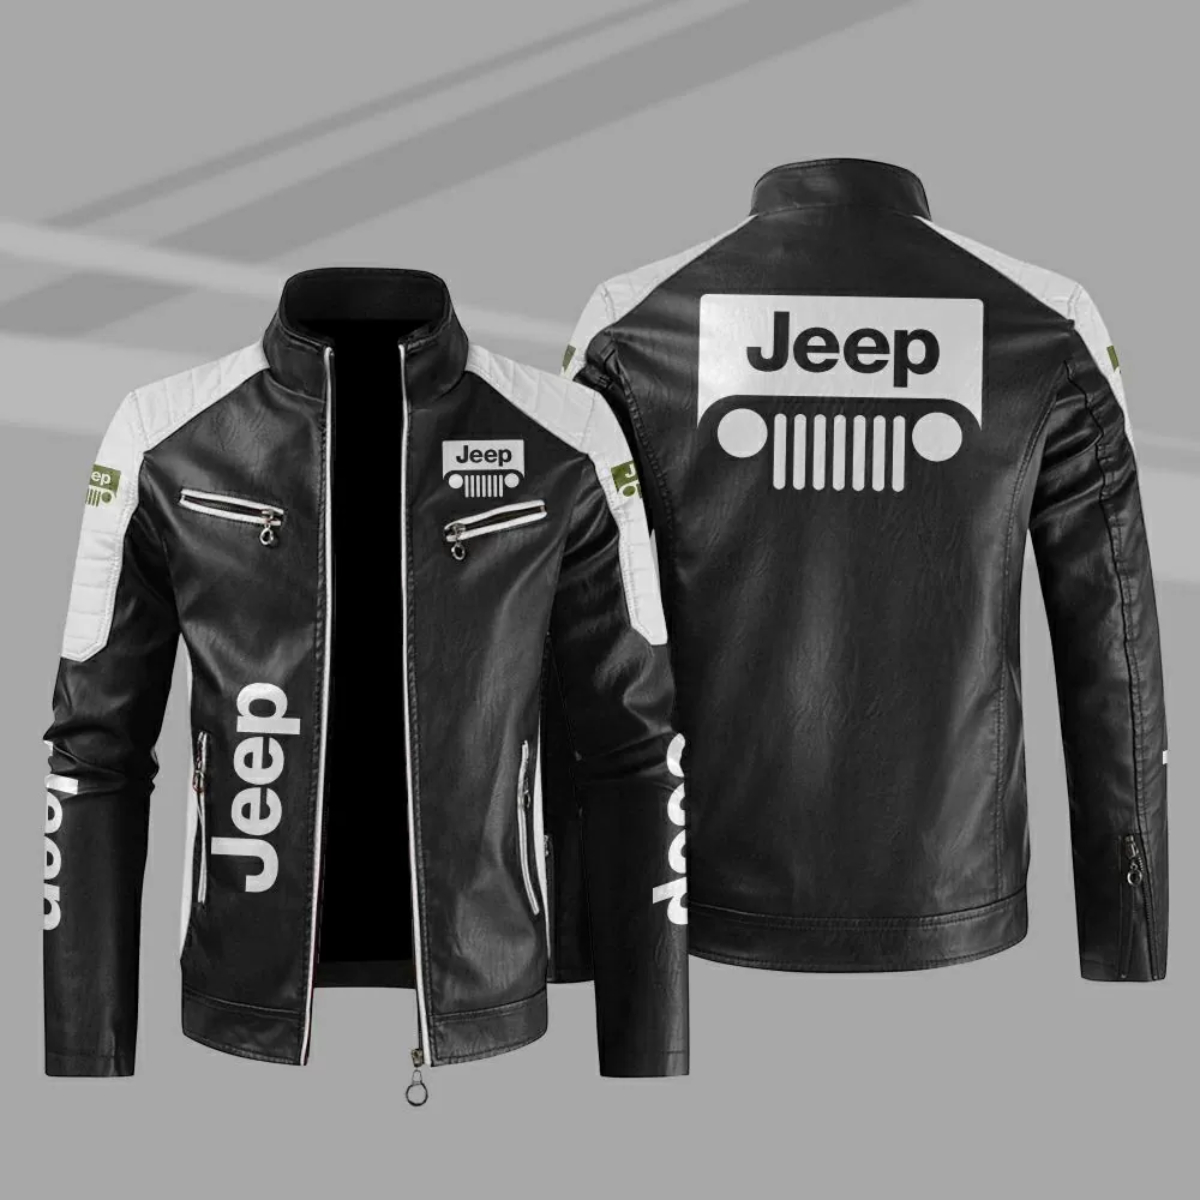 jeep jacket, jeep jacket mens, jeep jackets for ladies, jeep leather jacket, jeep wrangler jacket, jeep jacket women’s, jeep fleece jacket, afs jeep jacket, jeep rich jacket, jeep bomber jacket, full metal jacket jeep, jeep lava jacket, jeep windbreaker jacket, ace lava jacket, mackinaw coat ww2, women's jeep jacket, womens jeep jacket, jeep jacket amazon, jeep gladiator jacket, jeep winter jacket, ace engineering lava jacket, jeep jackets for sale, jeep windbreaker, jeep jean jacket, jeep racing jacket